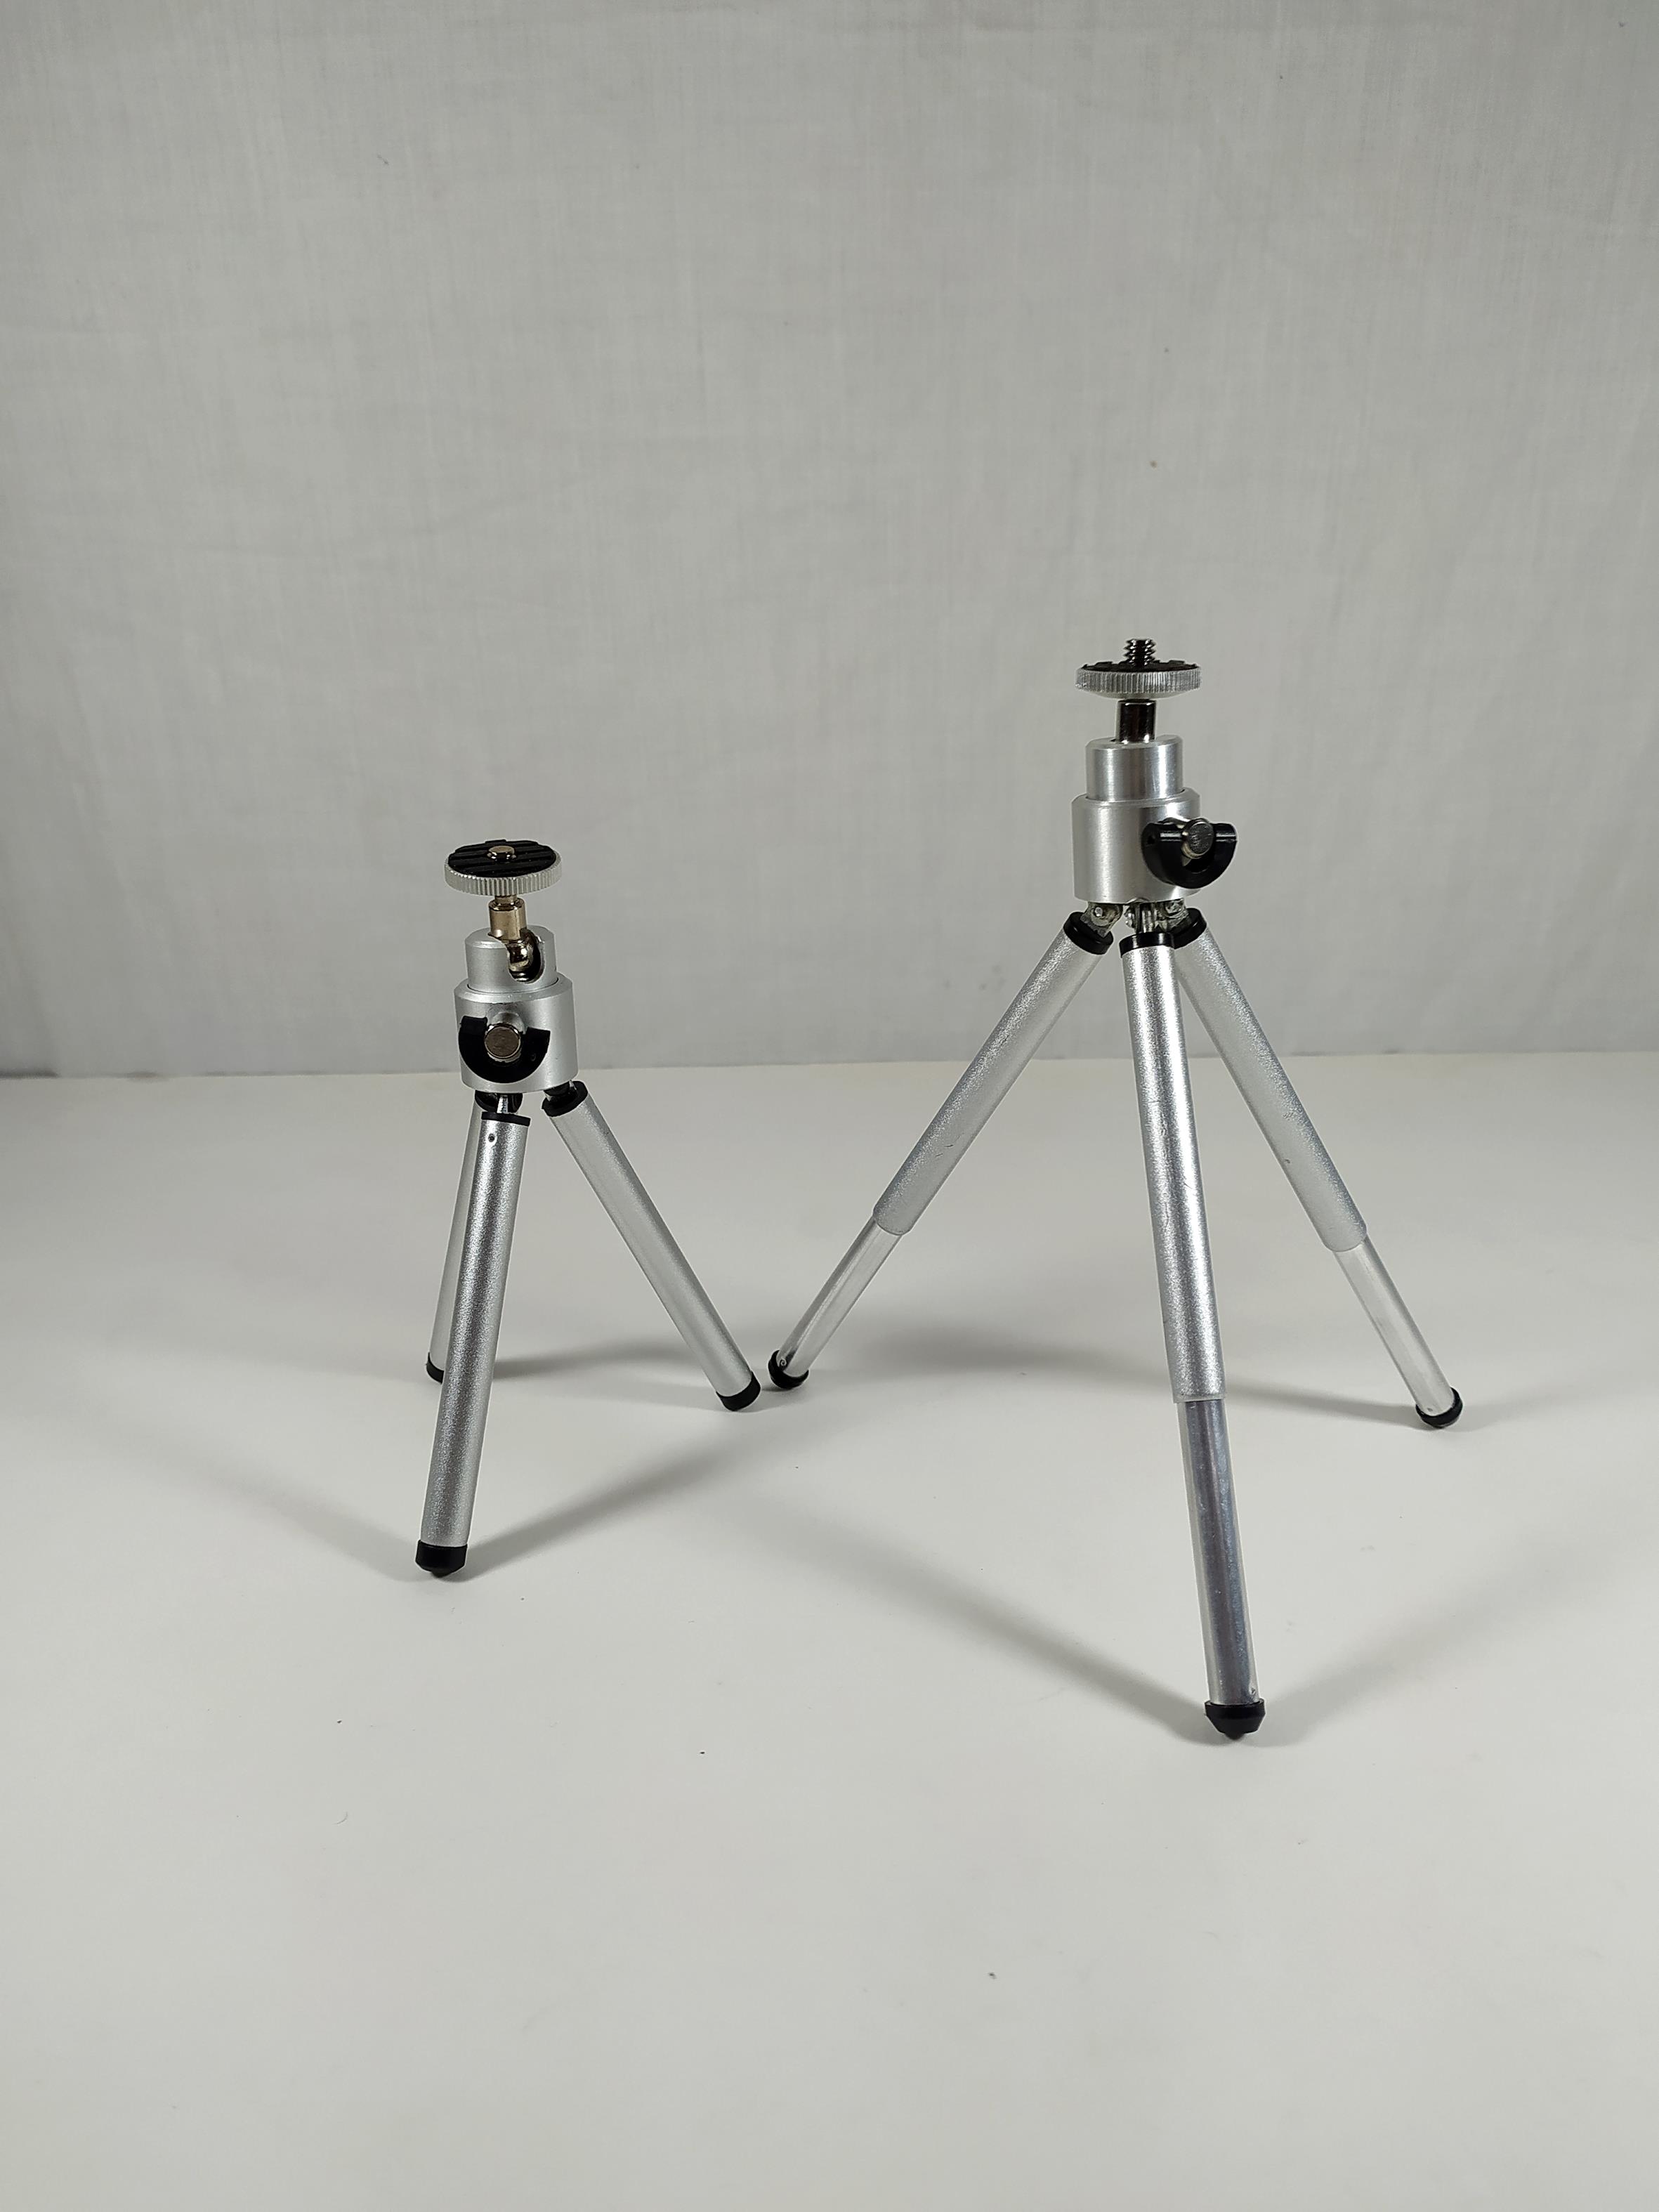 سه پایه تلسکوپی مخصوص دکور و دوربینهای کوچک